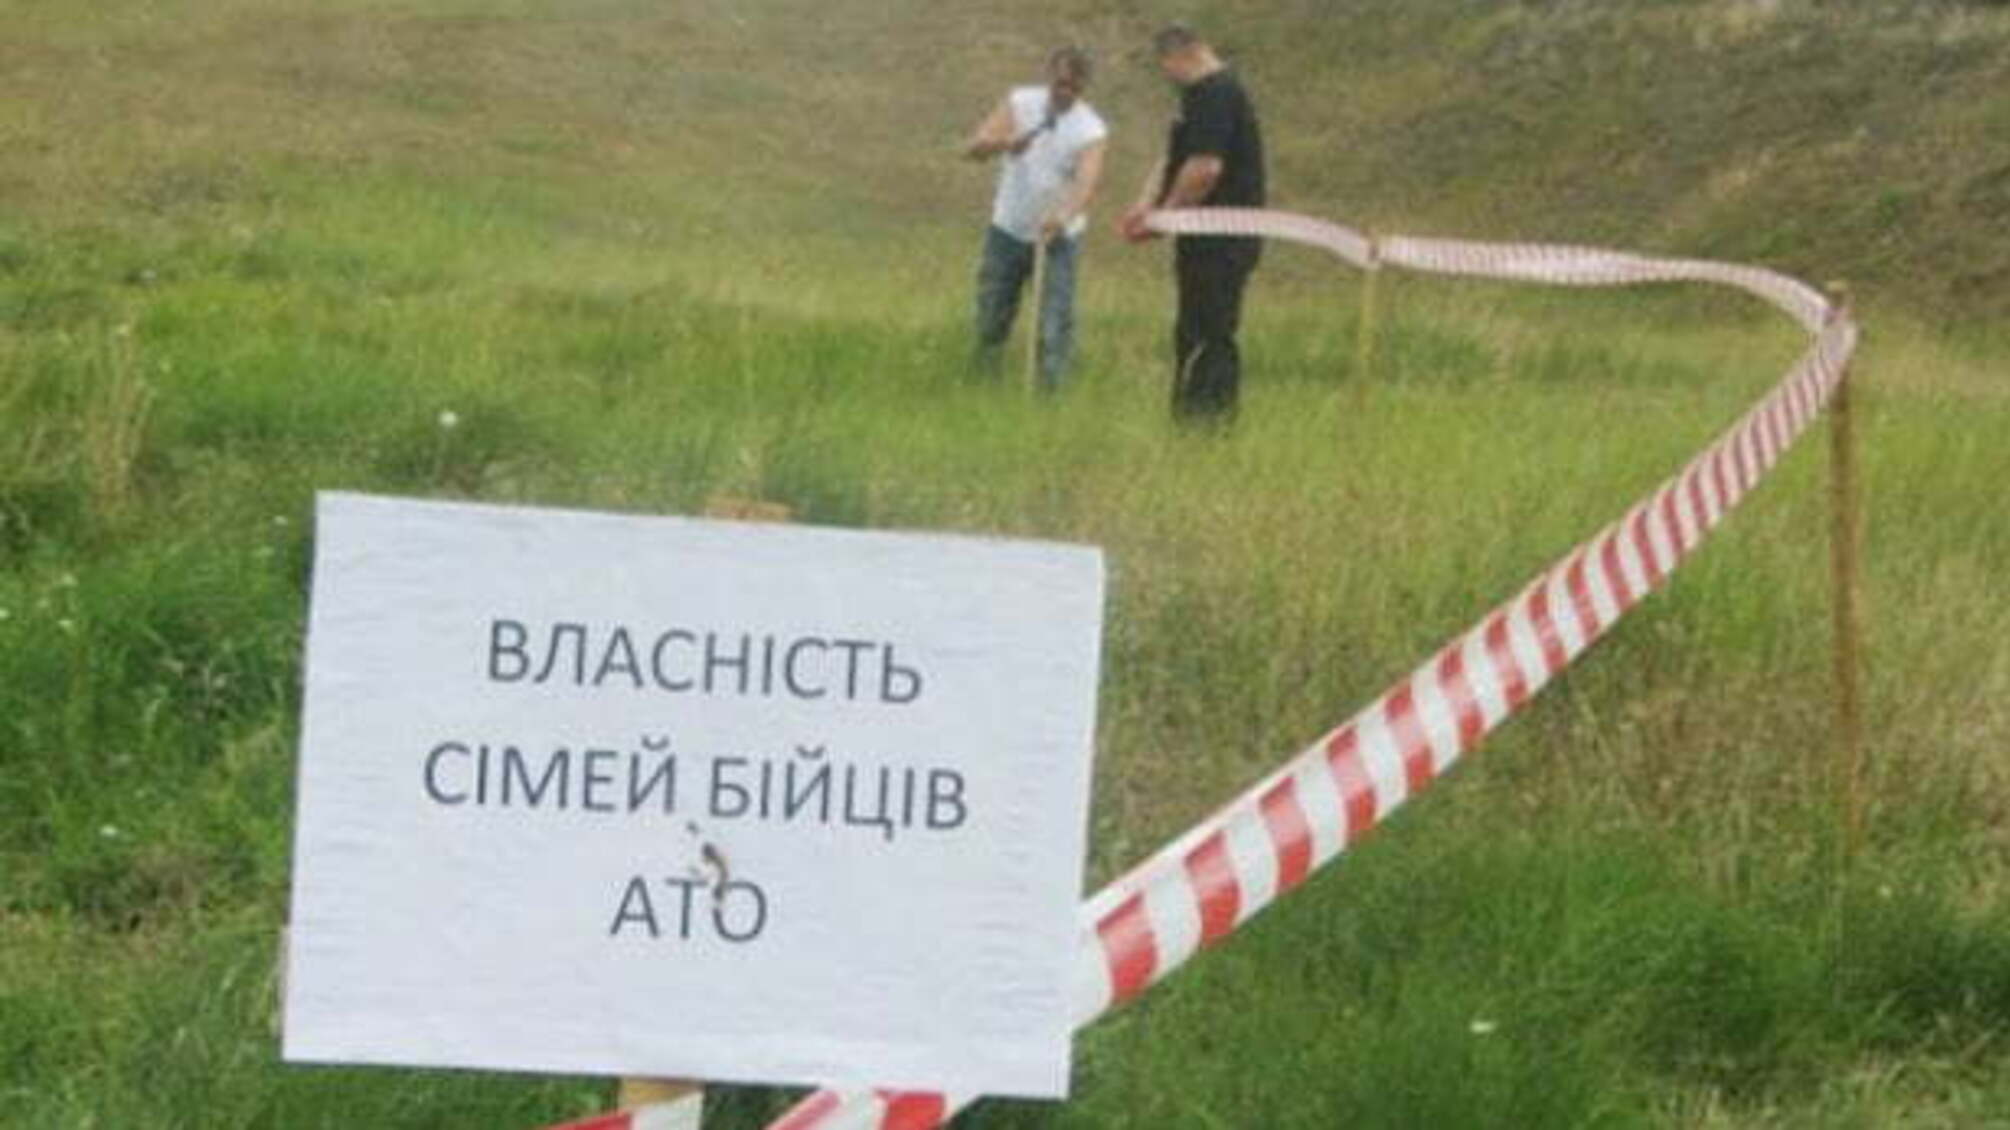 На Черкащині керівники району намагалися роздерибанити землі атовців